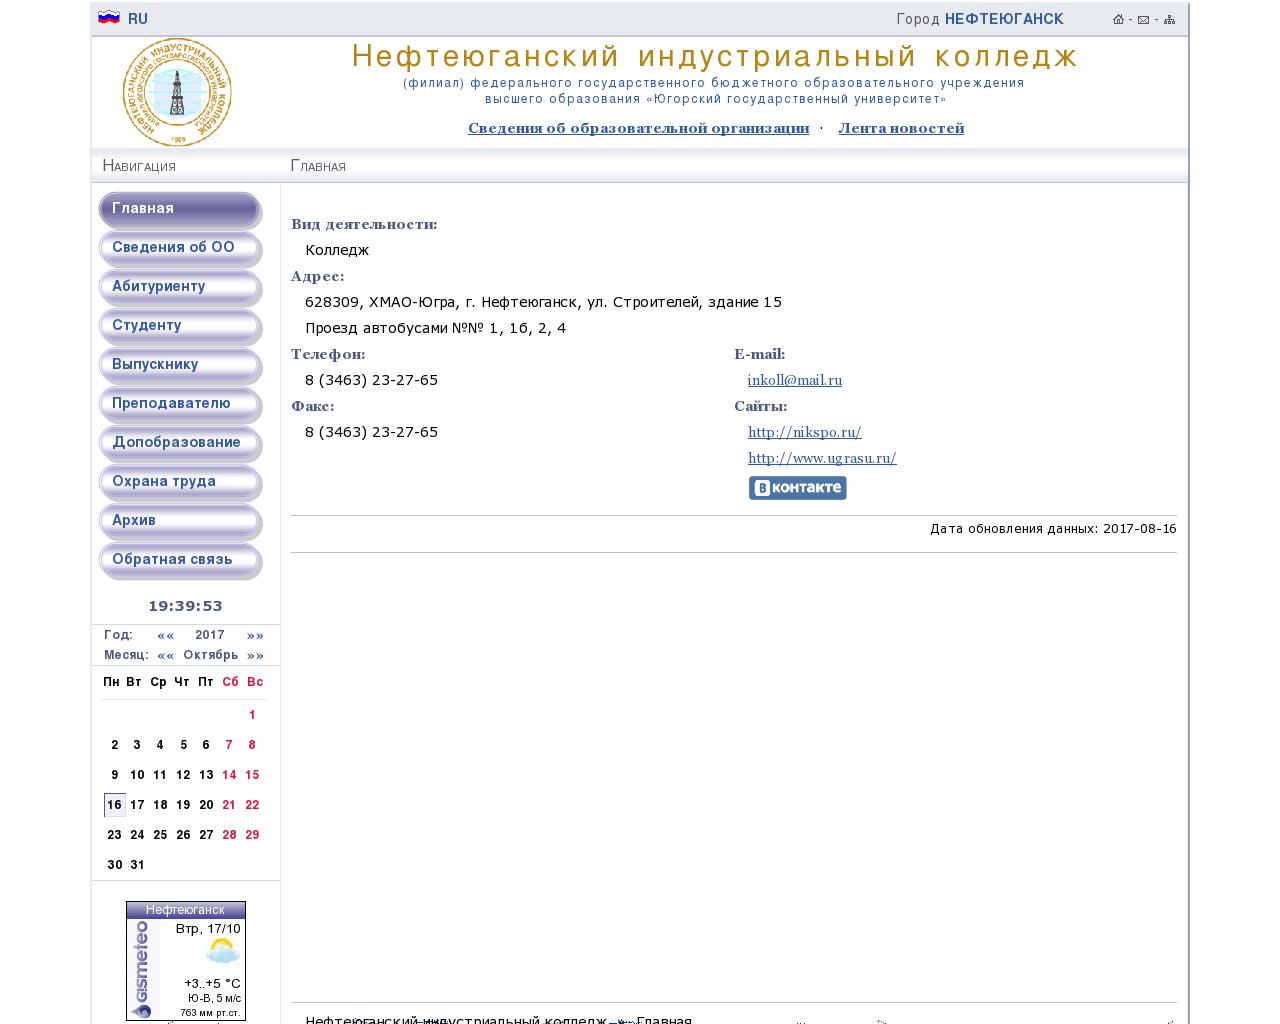 Изображение сайта nikspo.ru в разрешении 1280x1024